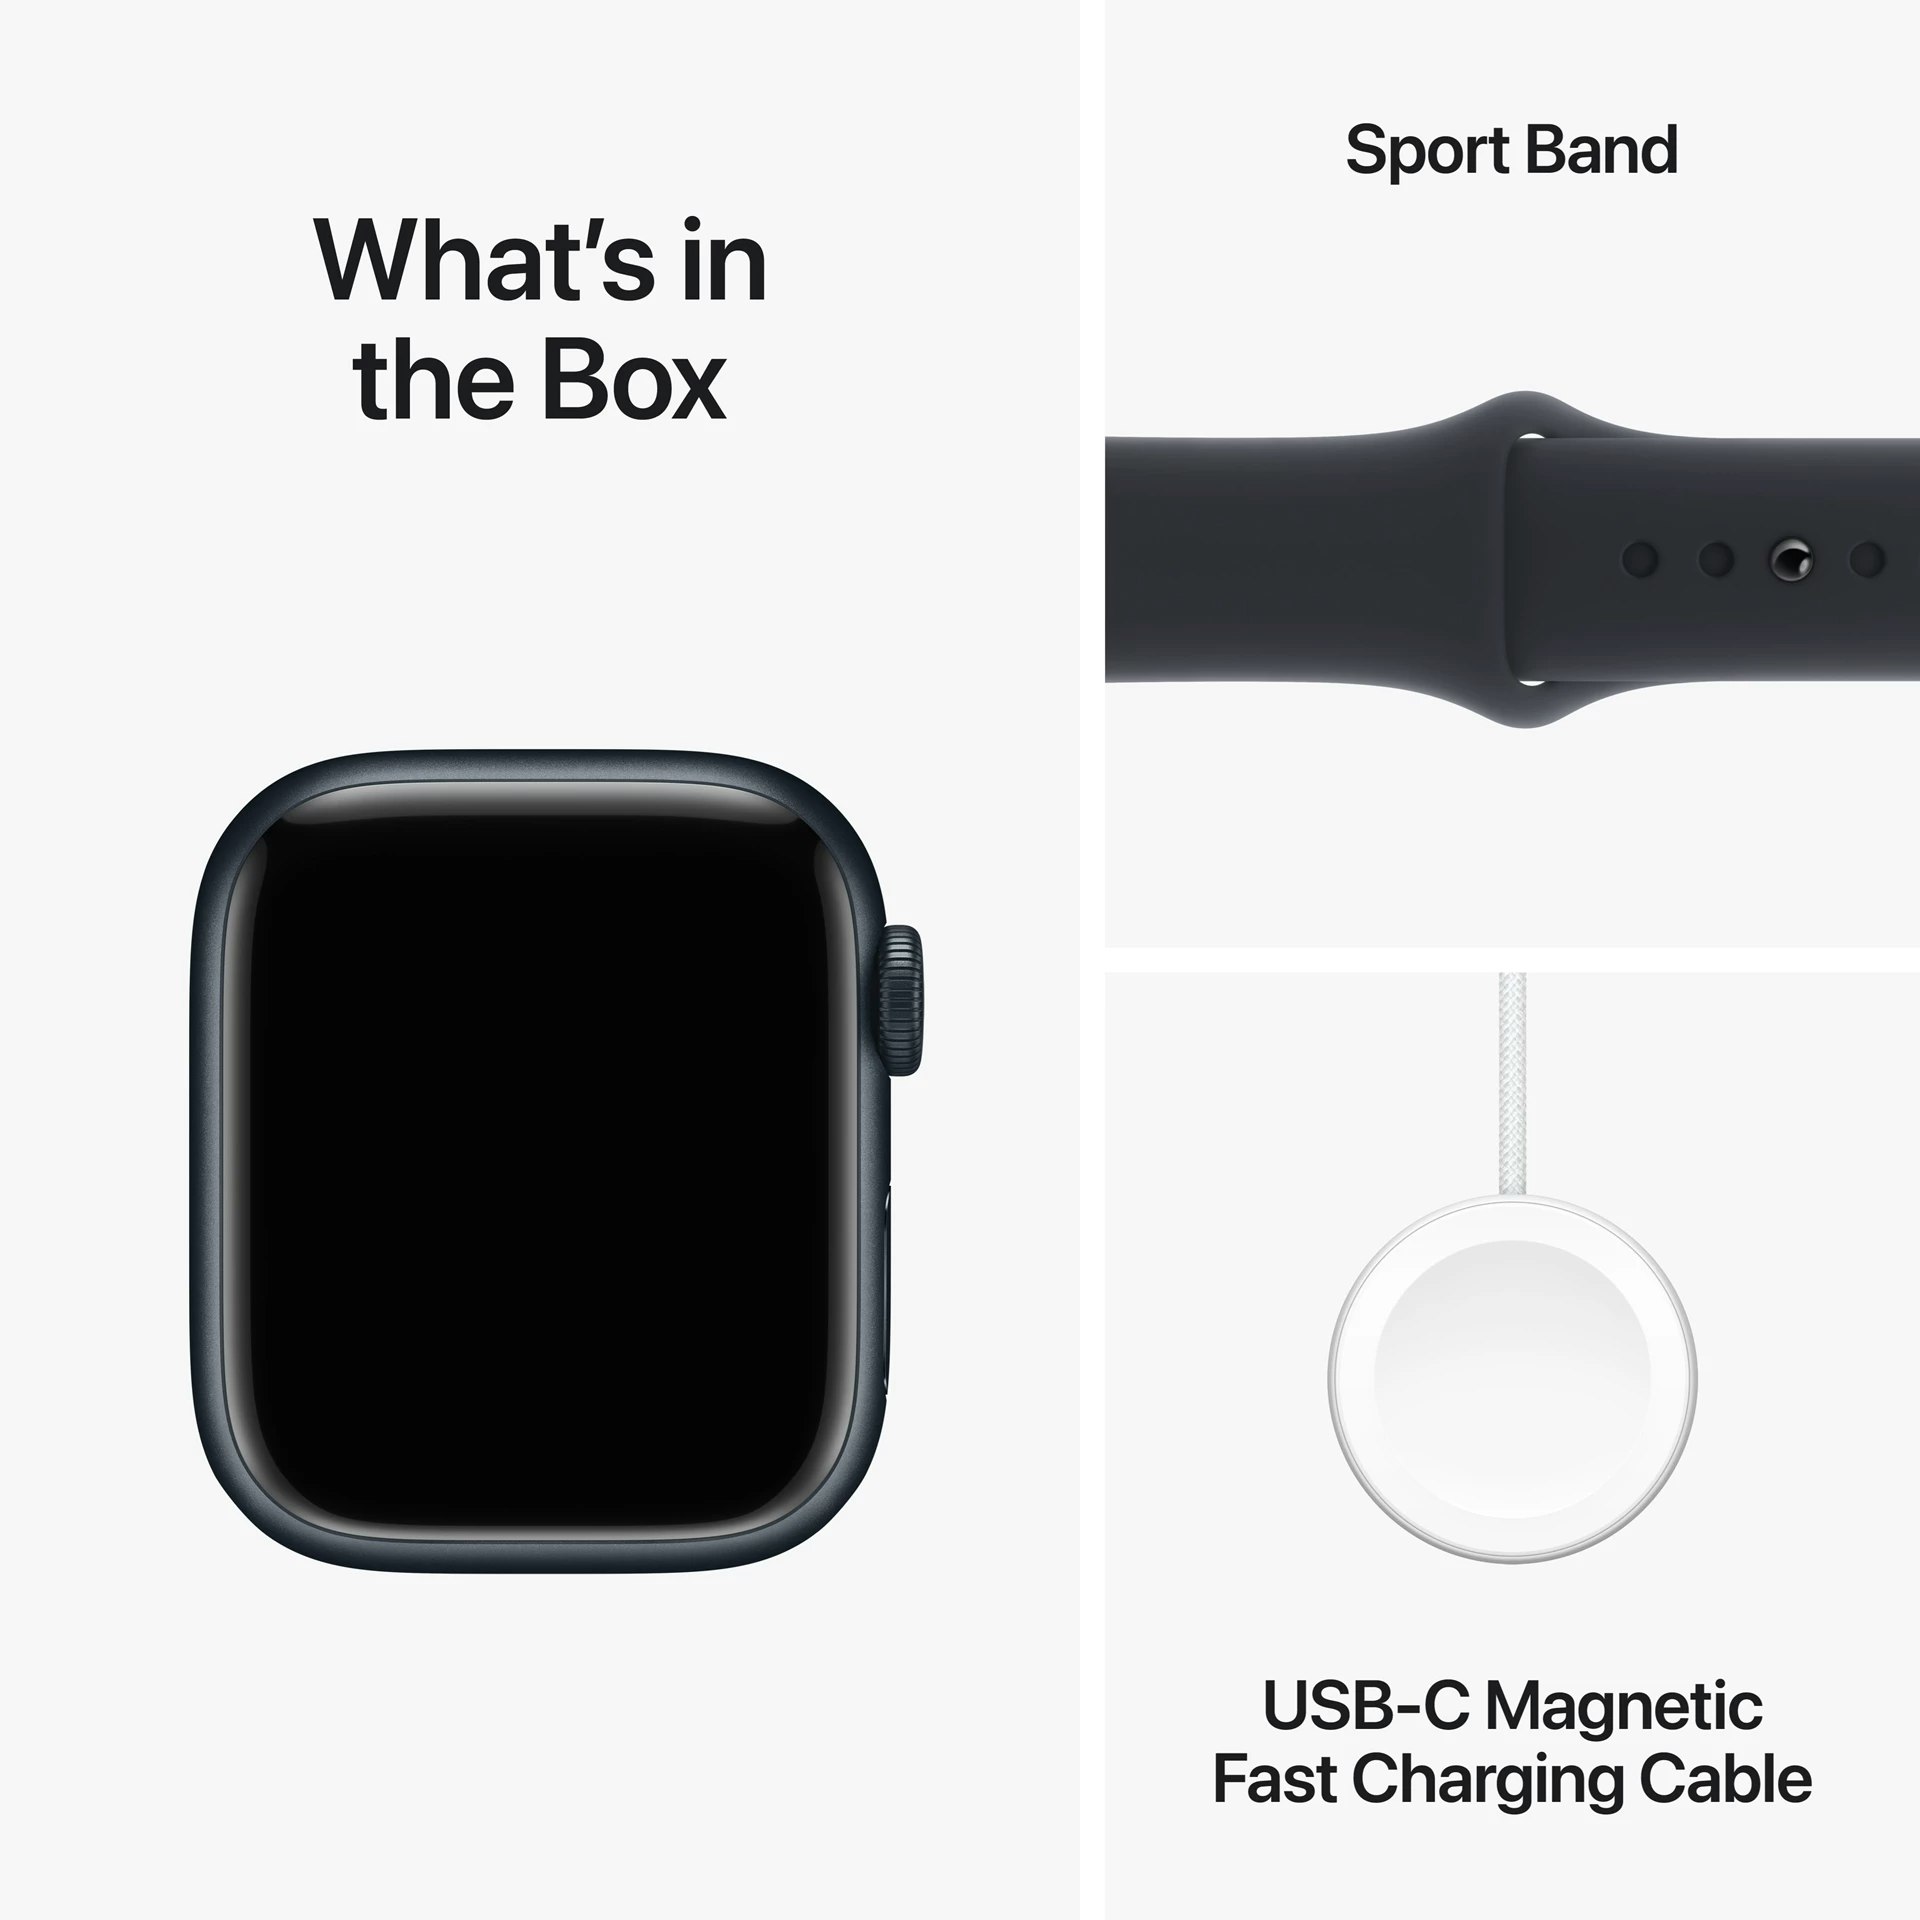 Apple Watch Series 9 GPS 41mm Midnight Aluminium Case med Midnight Sport Band